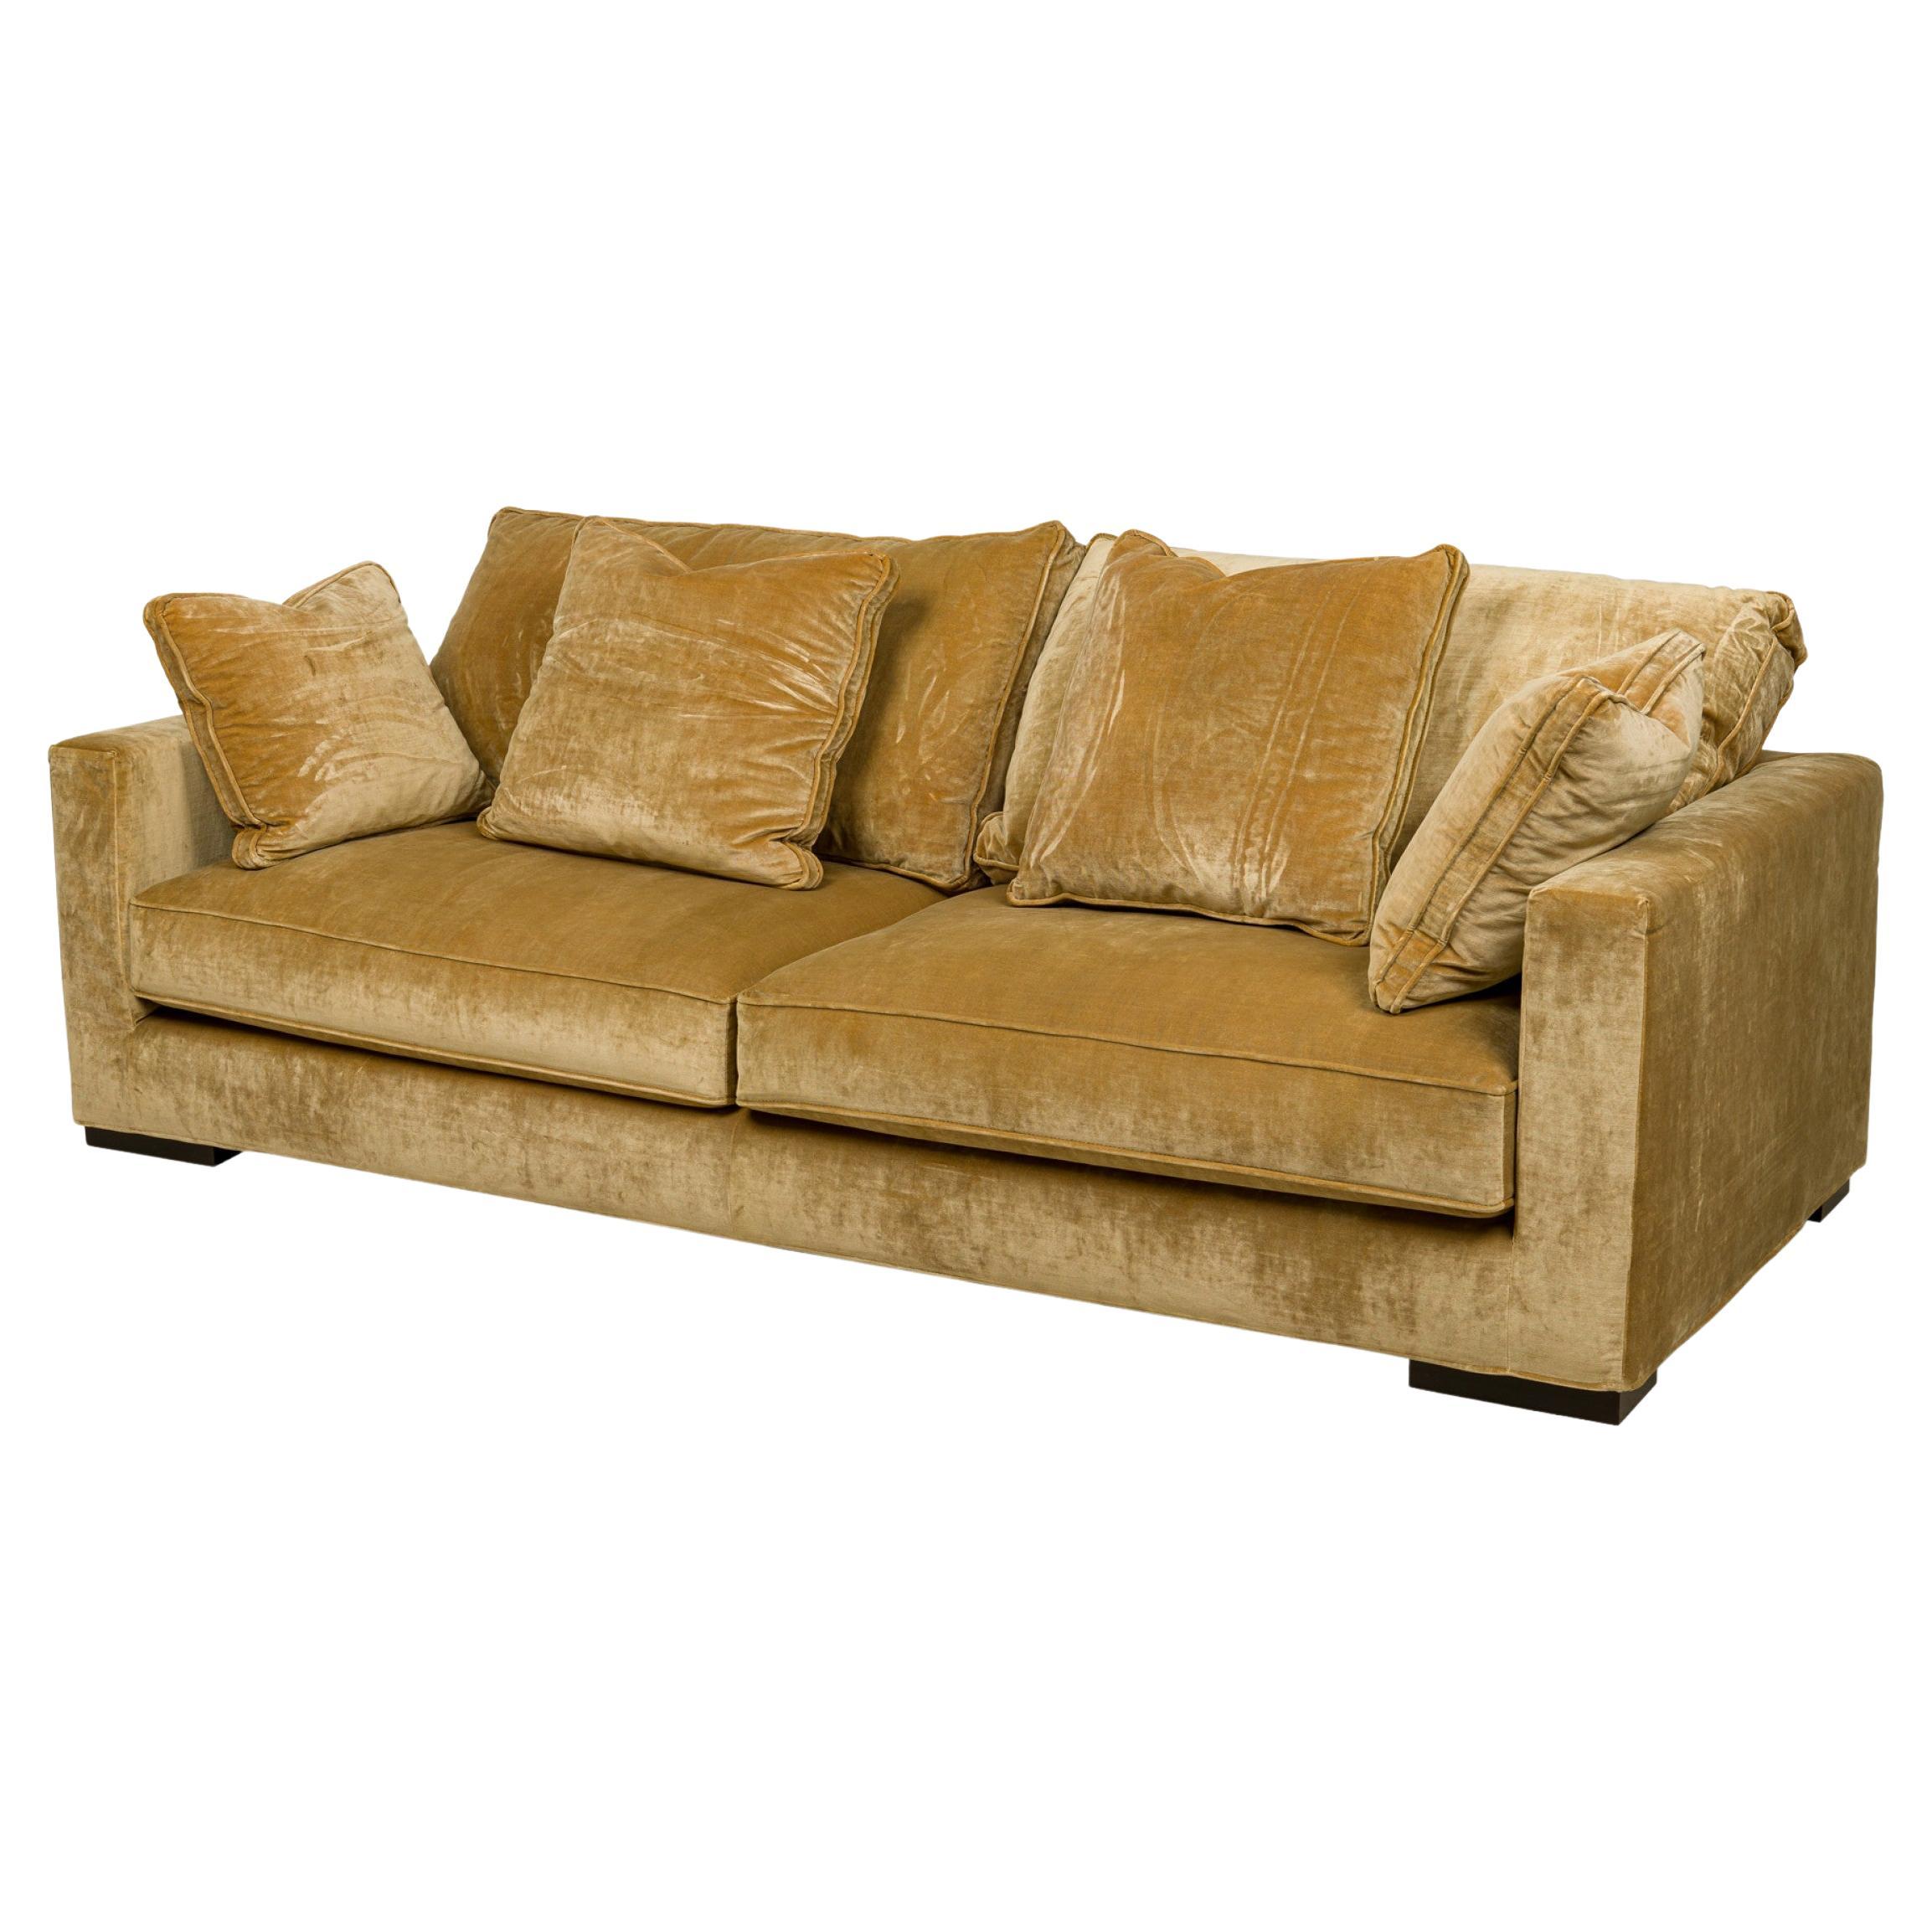 Roche Bobois Vintage Light Gold Crushed Velvet Upholstered Sofa